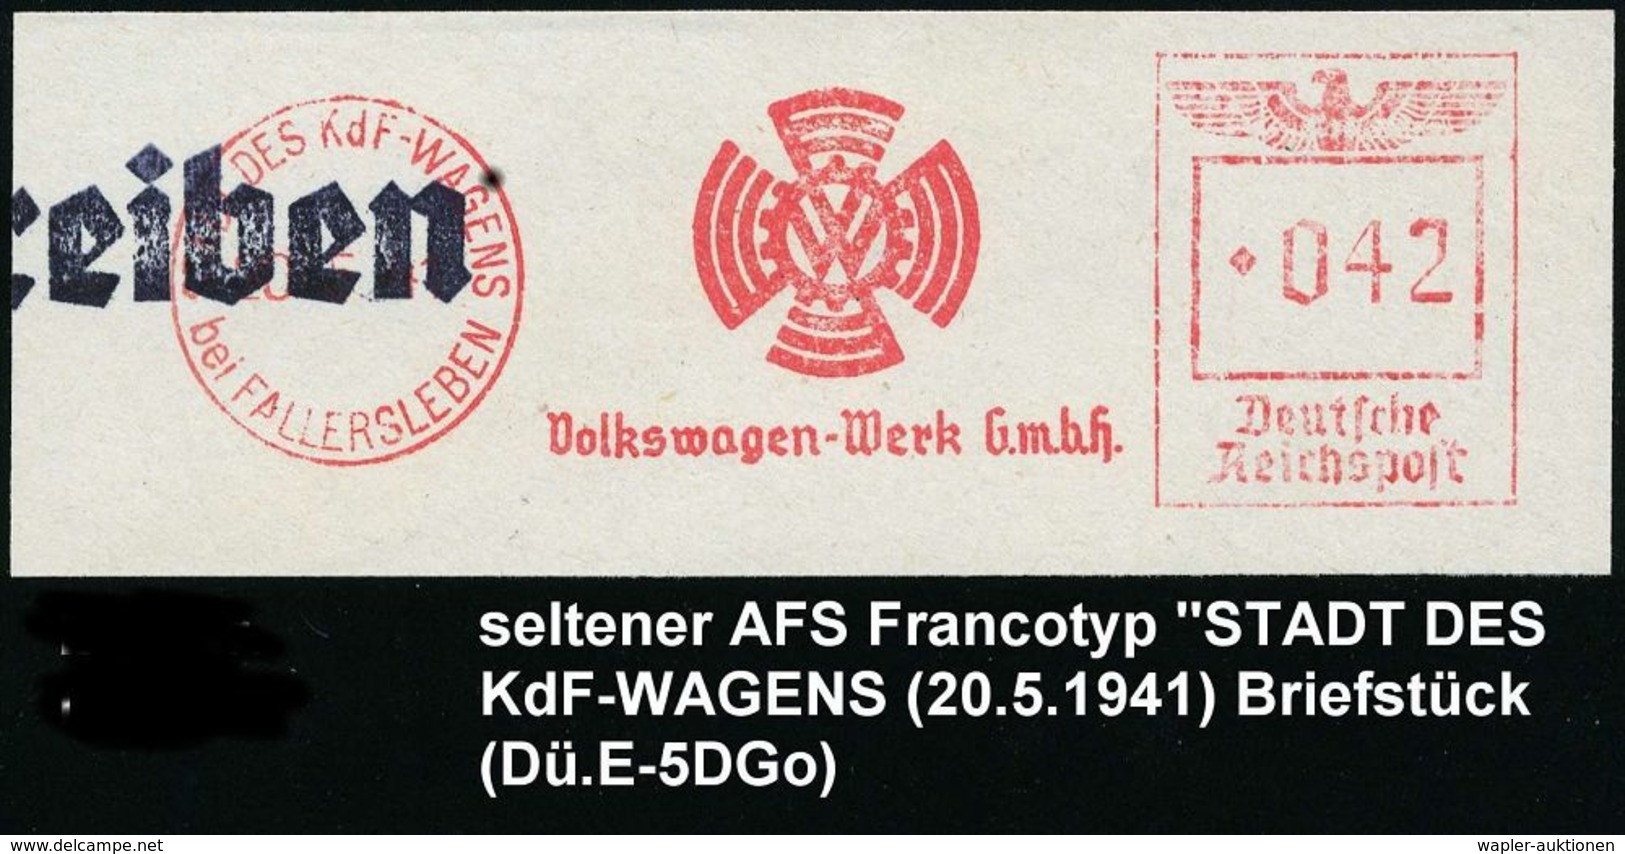 VOLKSWAGEN / VW / K.-D.-F.-WAGEN / PORSCHE : STADT DES KdF-WAGENS/ Bei FALLERSLEBEN/ VW/ Volkswagen-Werk GmbH 1941 (19.8 - Autos